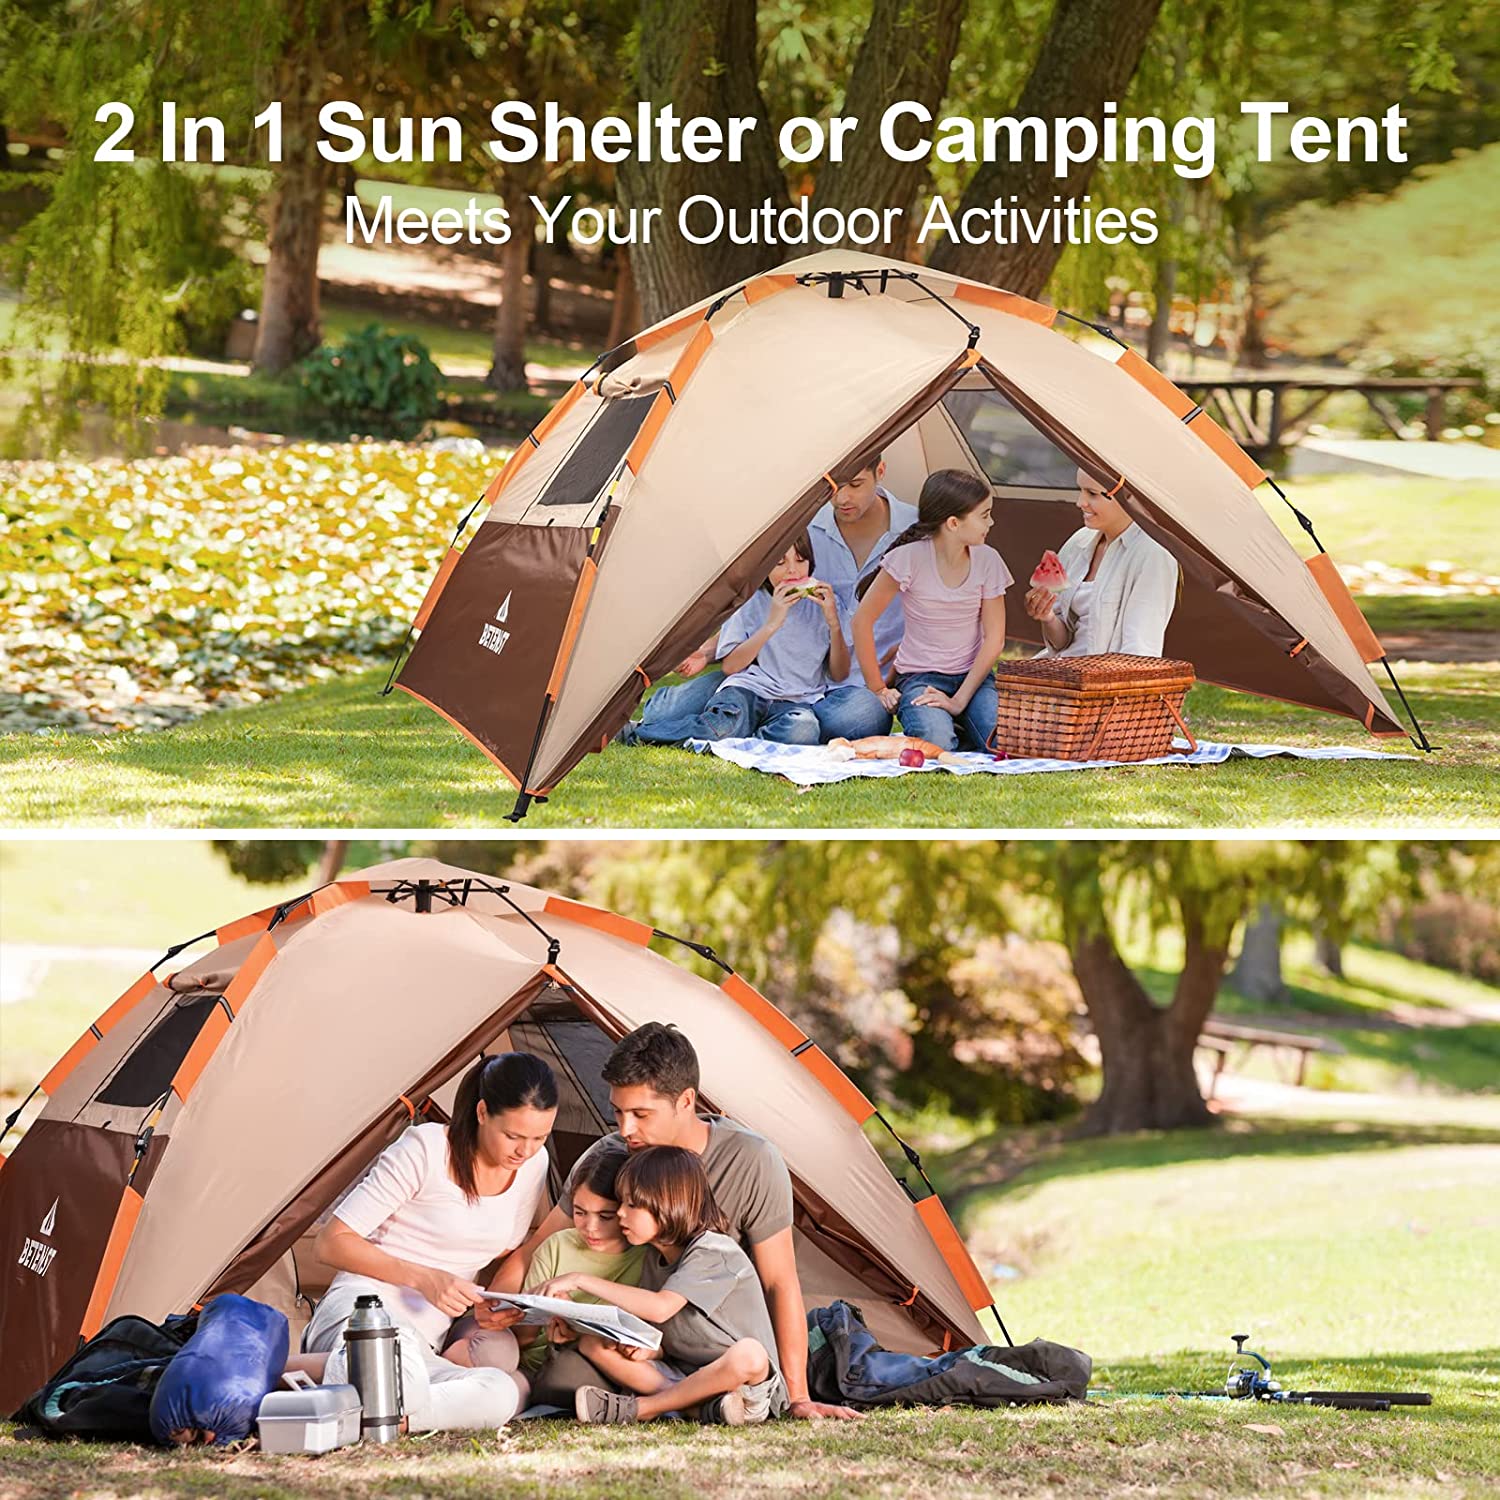 Tente de Camping BETENST Spacieuse Imperméable et Facile à Monter